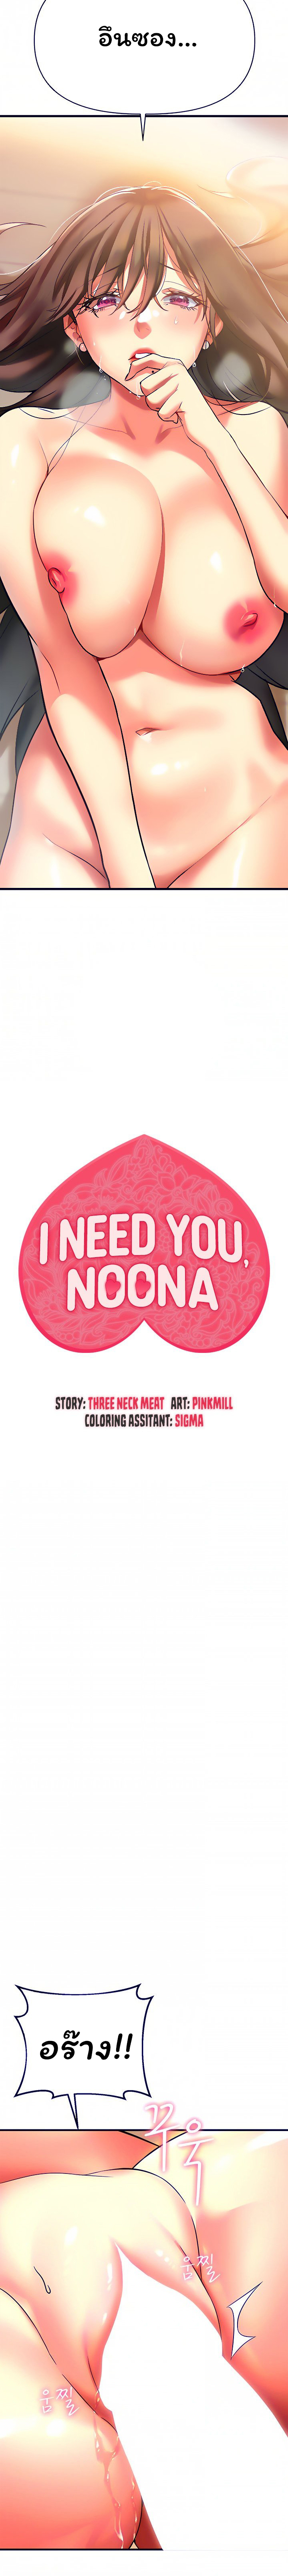 I Need You, Noona 8 02